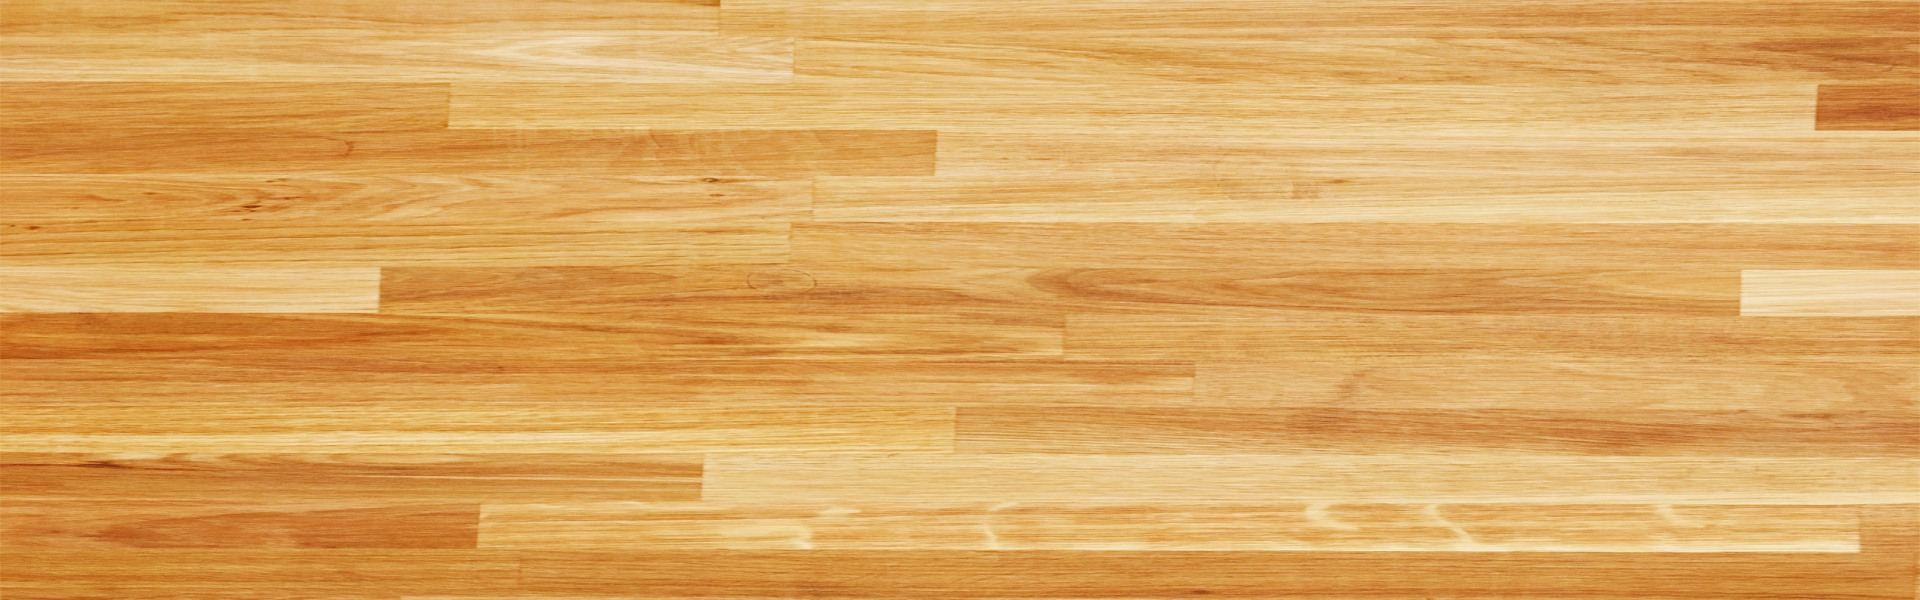 wooden floor texture background homewood al